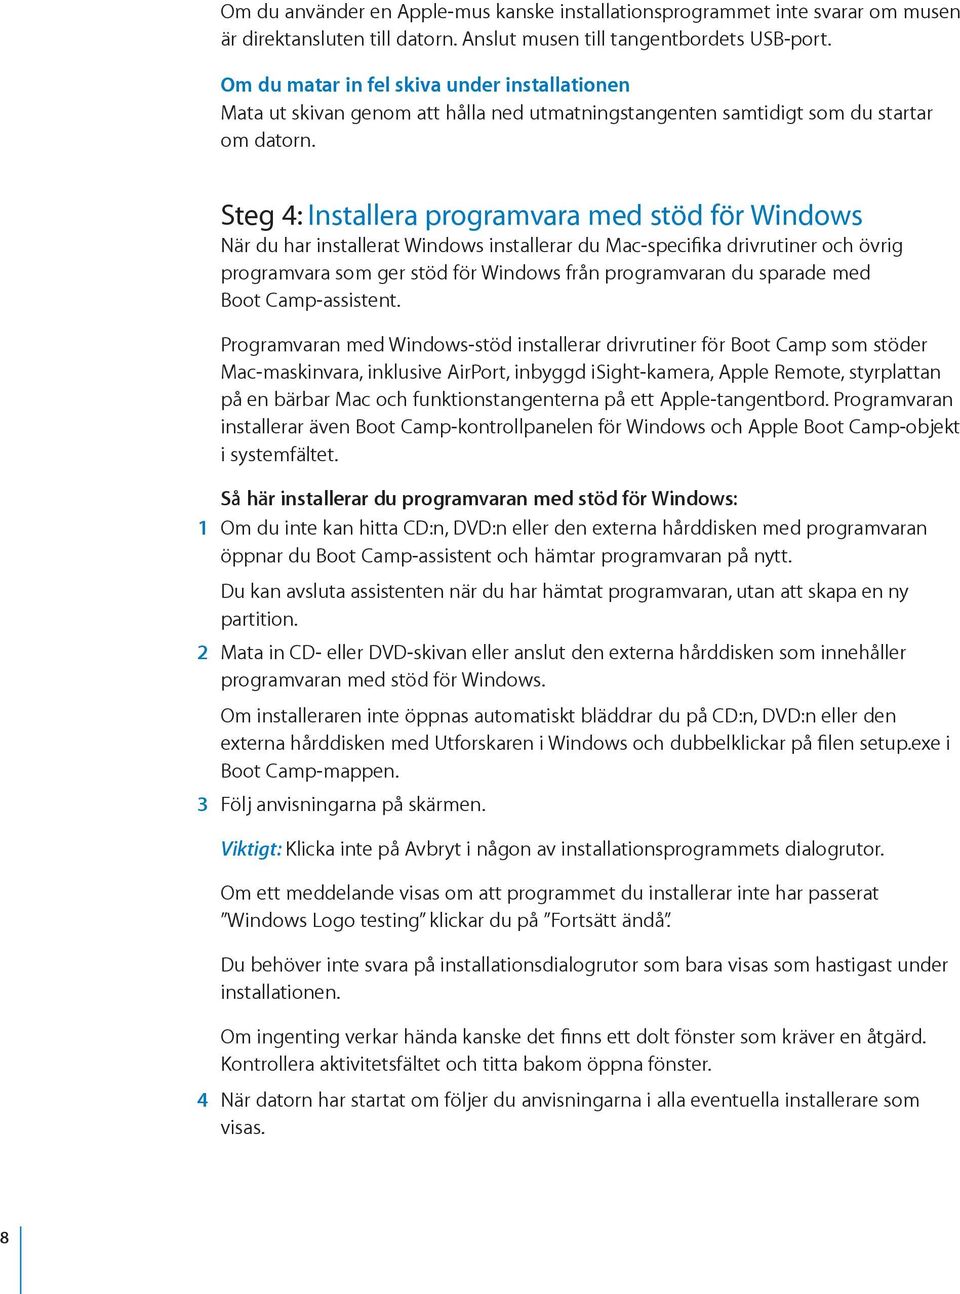 Steg 4: Installera programvara med stöd för Windows När du har installerat Windows installerar du Mac-specifika drivrutiner och övrig programvara som ger stöd för Windows från programvaran du sparade